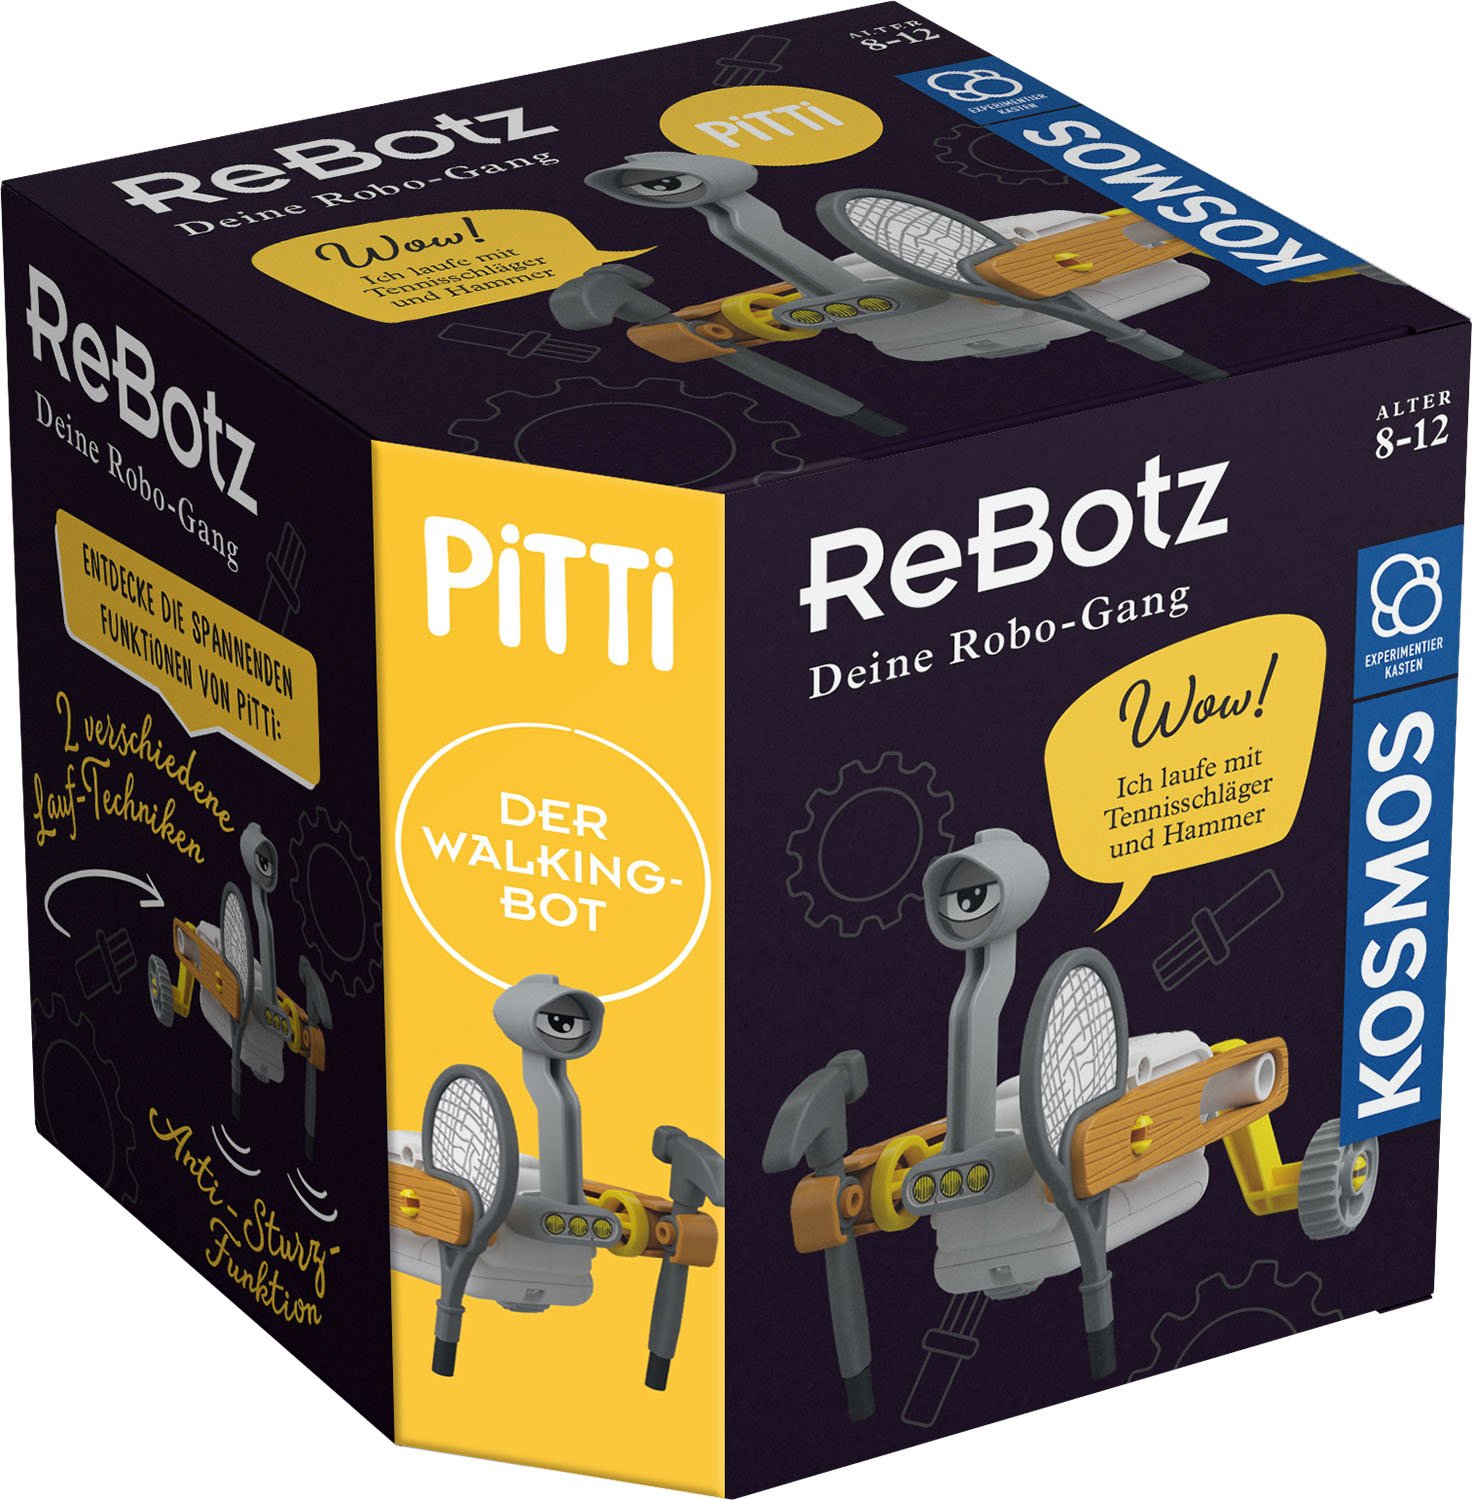 ReBotz - Pitti der Walking Bot